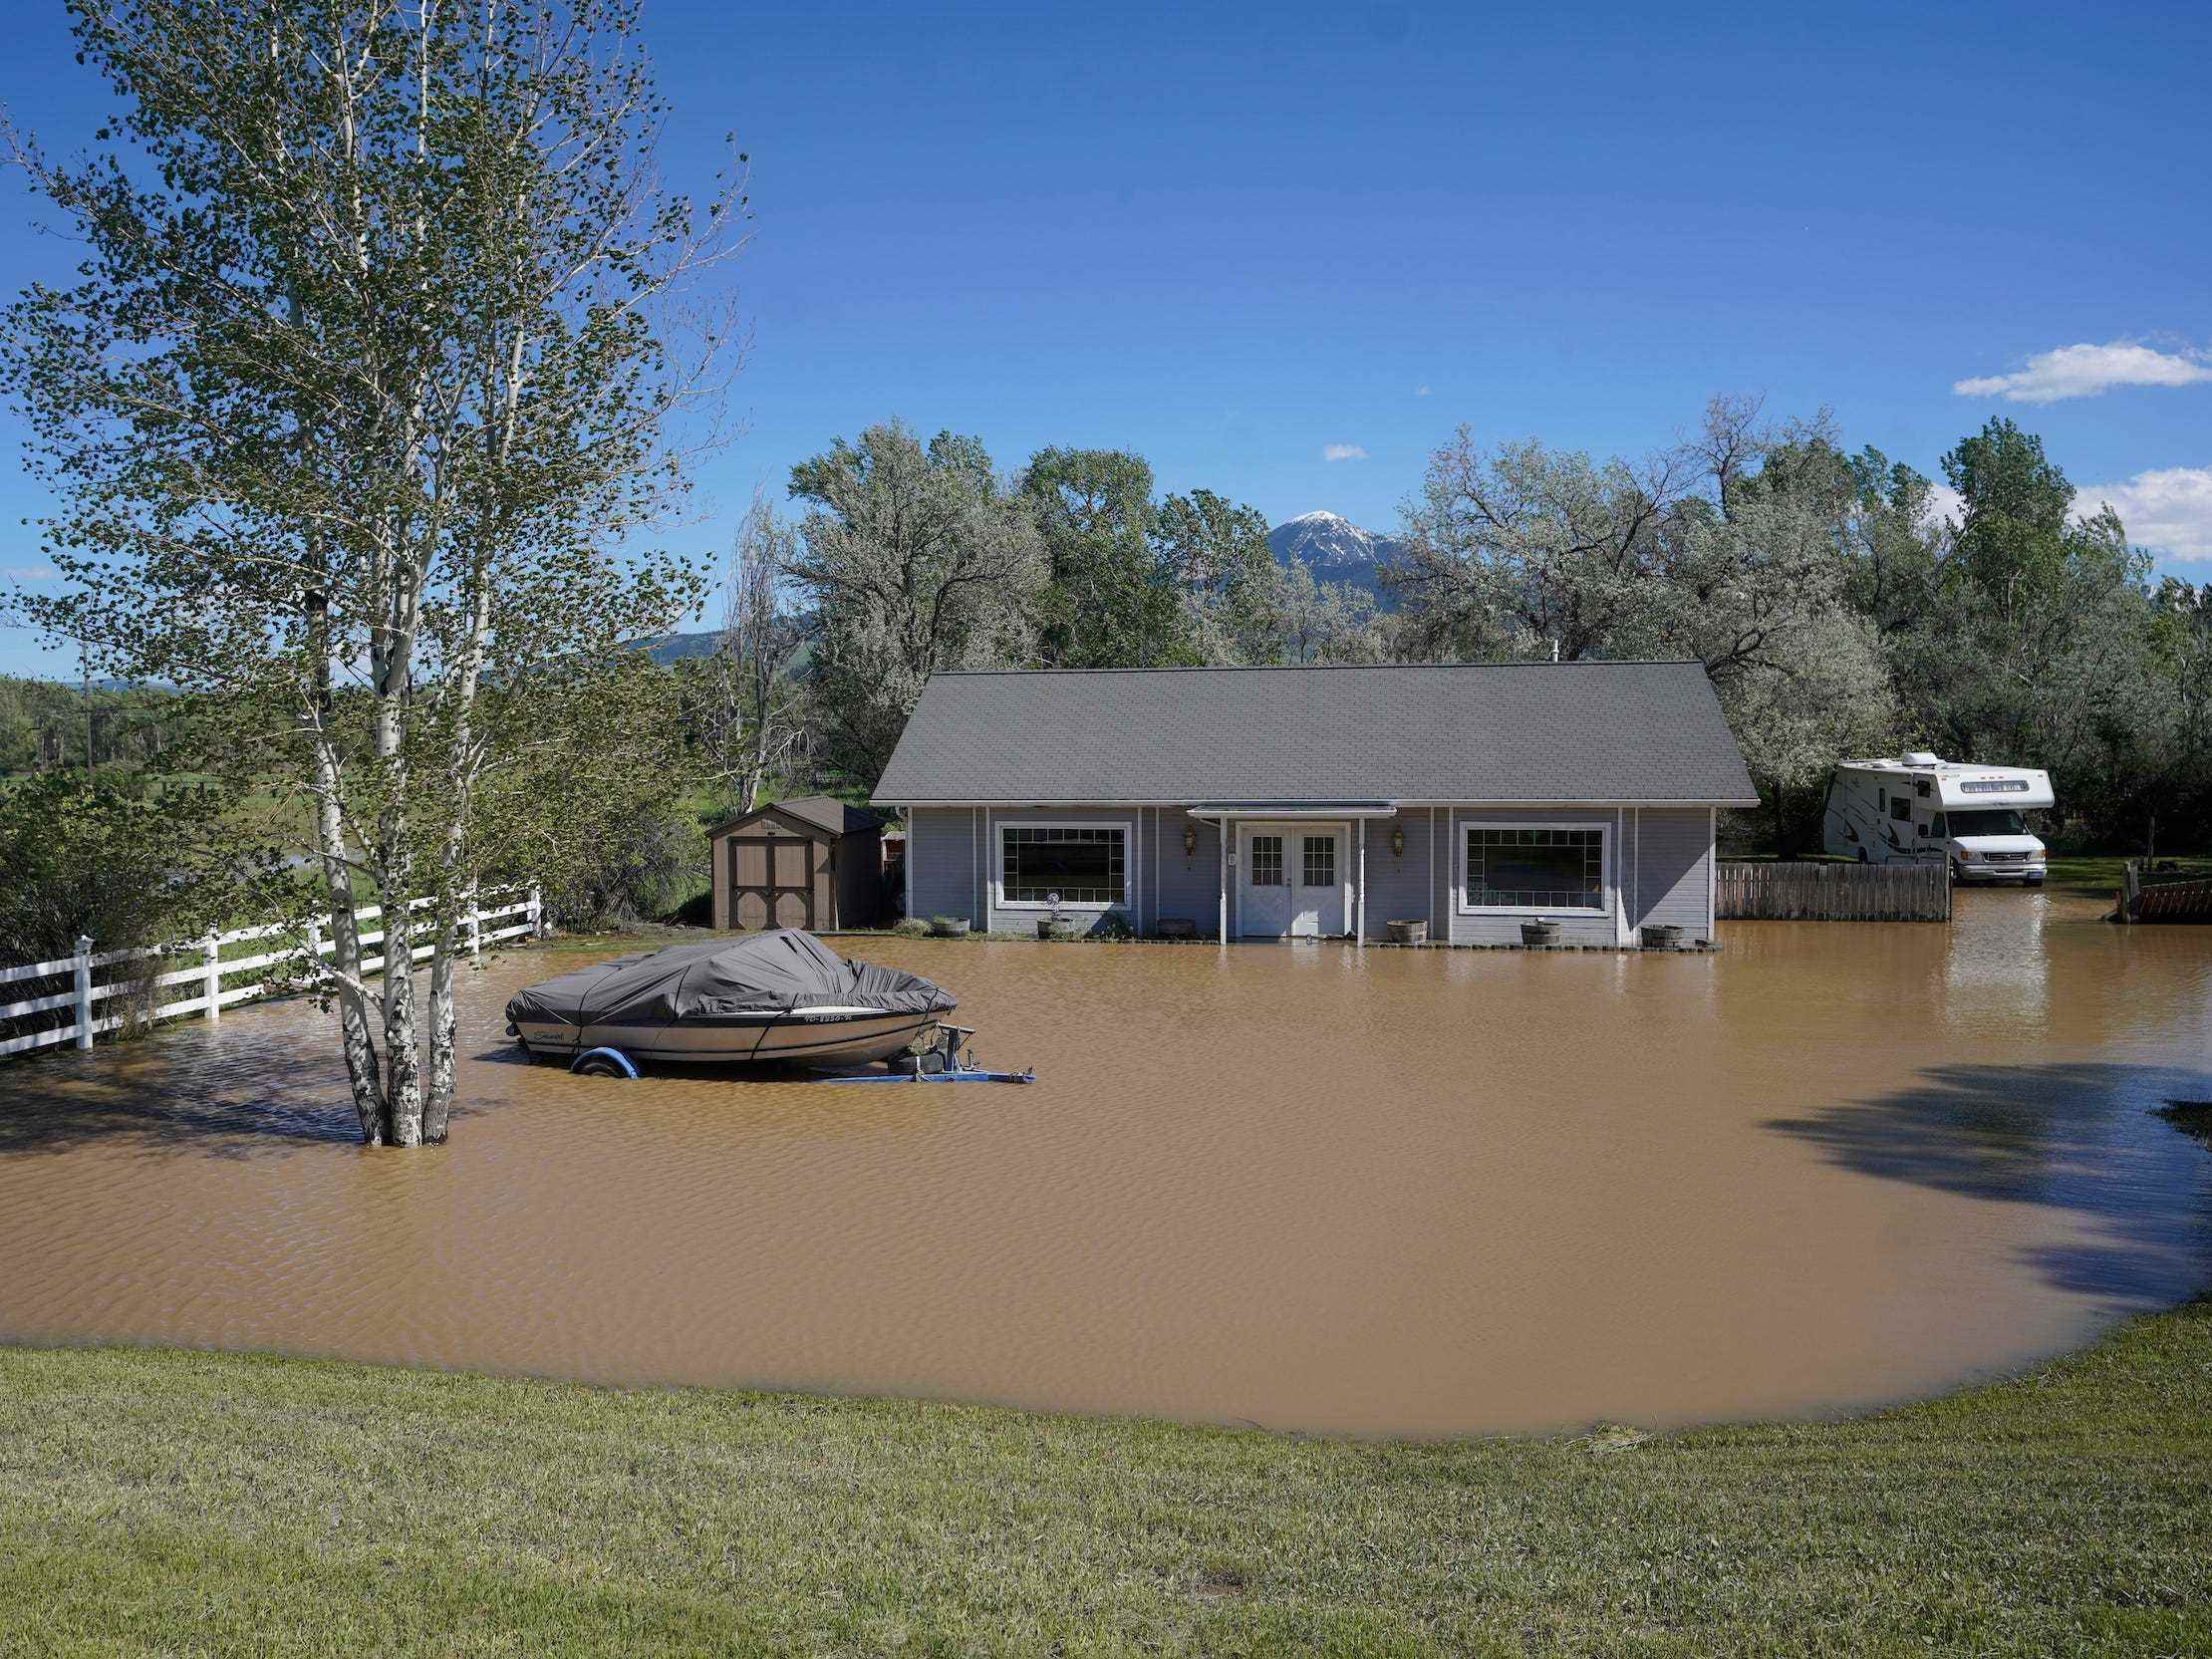 Haus und Boot im Hochwasser